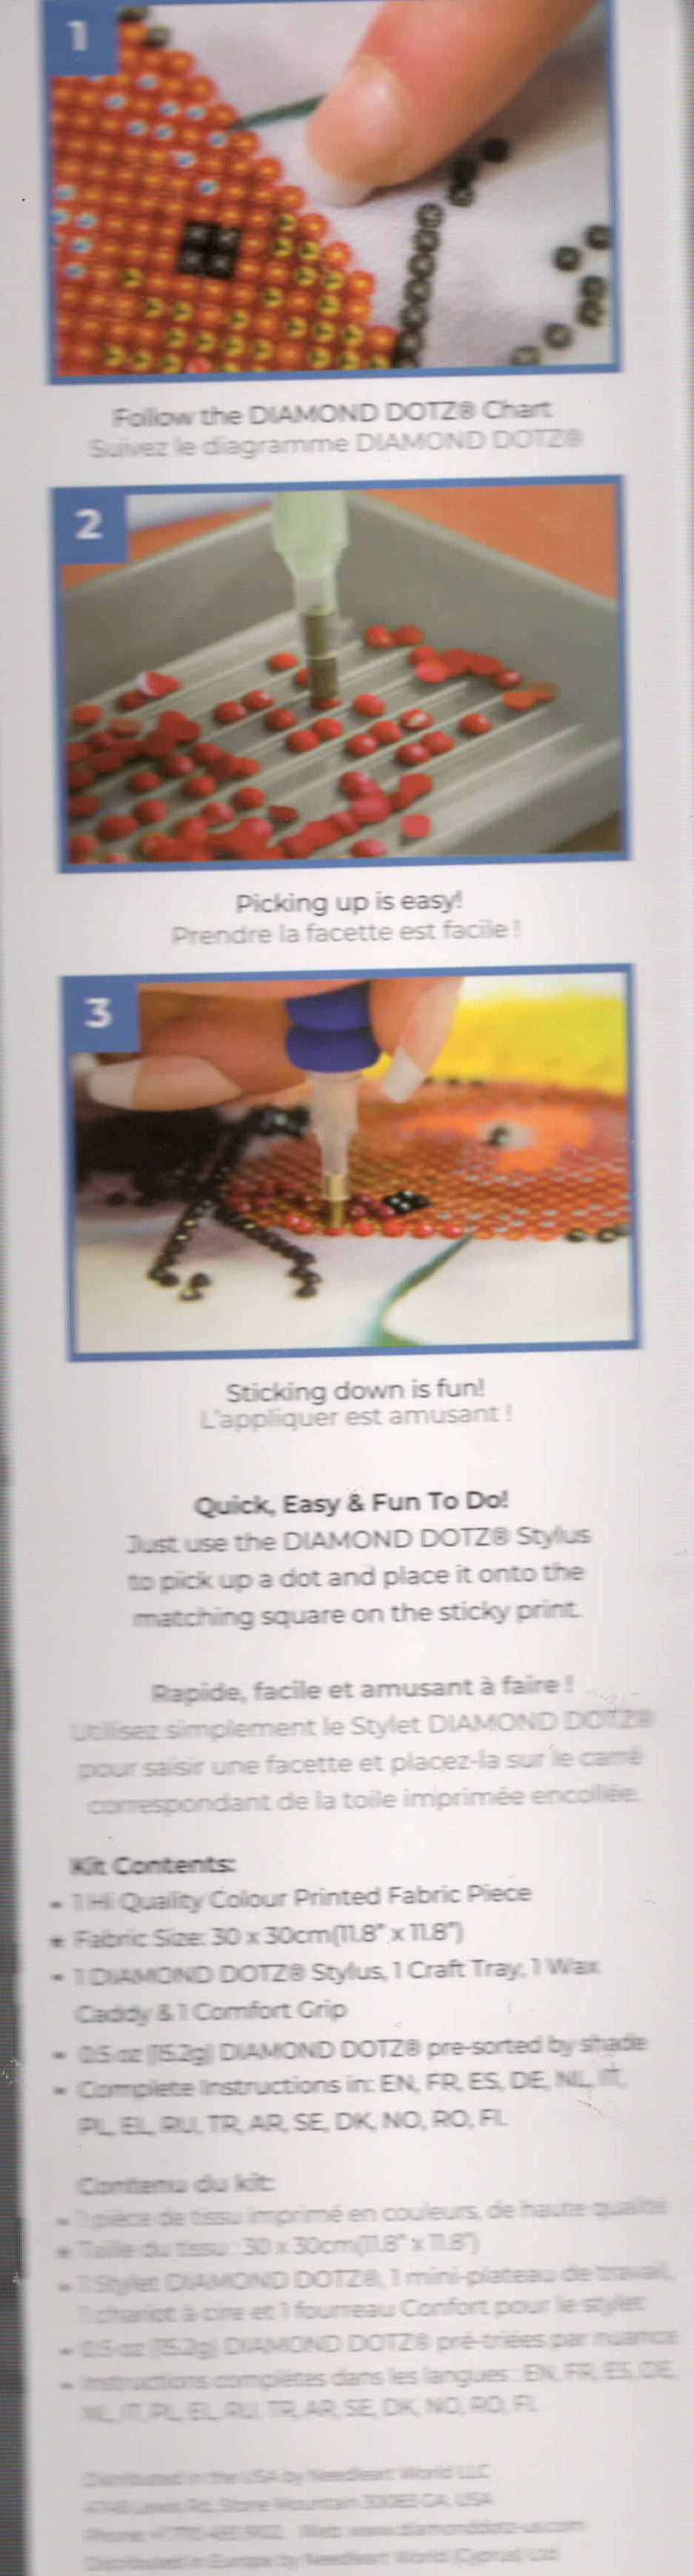 DMG DIY Diamond Dotz Disney 101 Dalmatians Facet Art Bead Picture Craft Kit